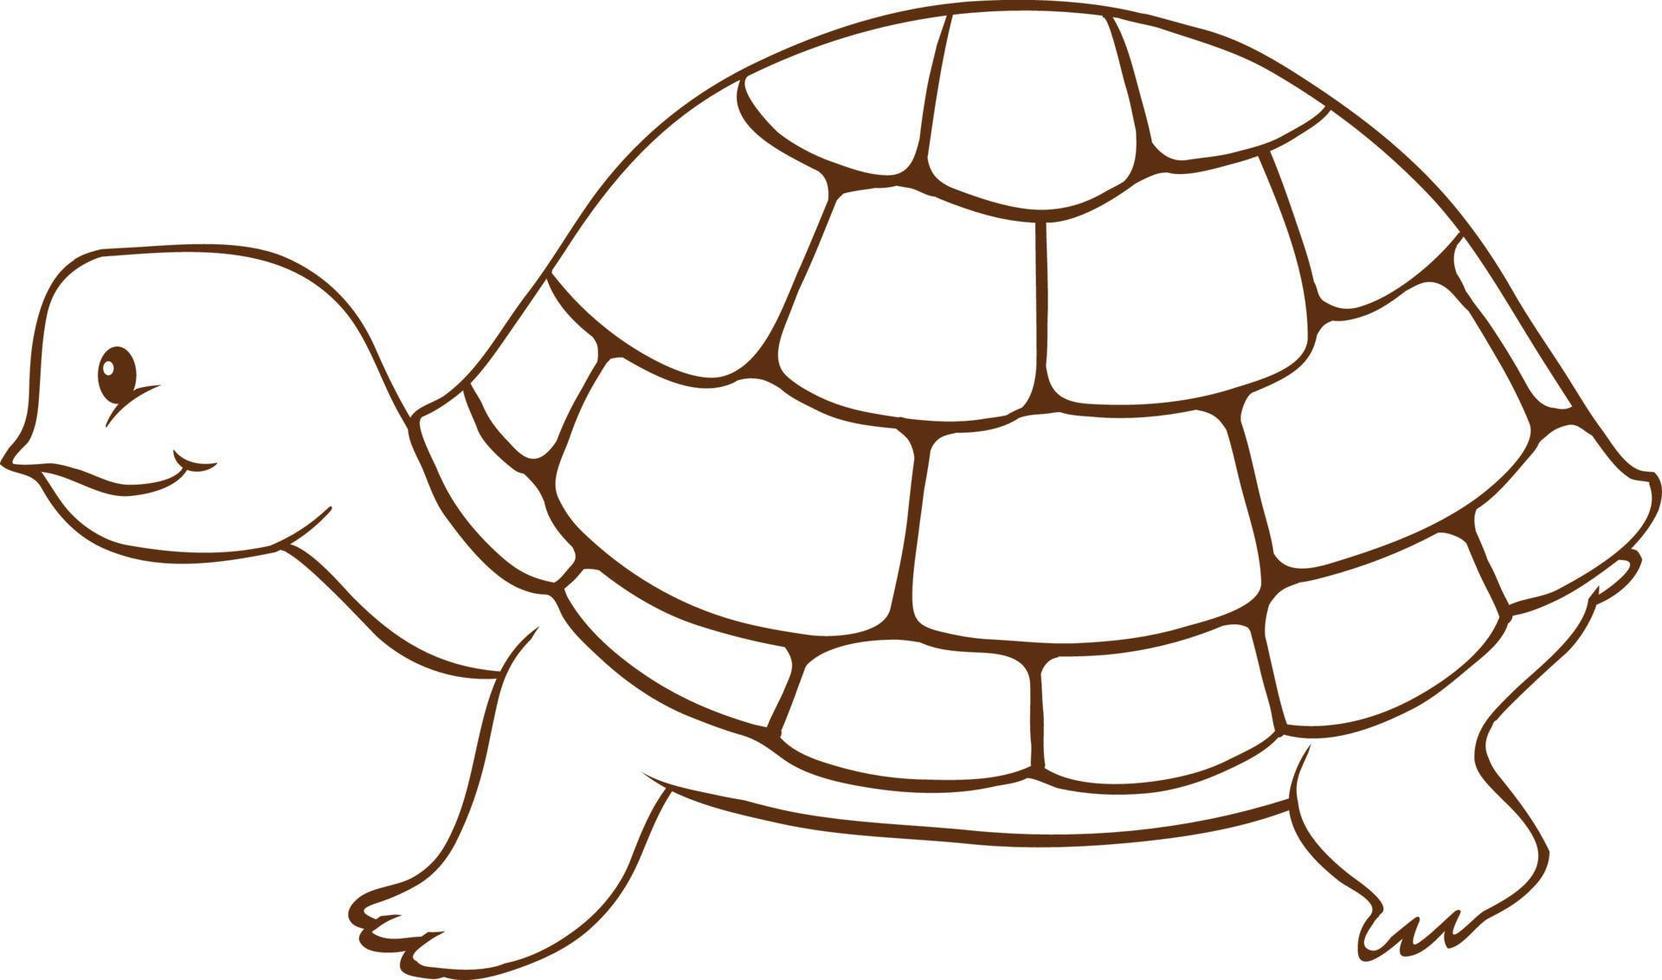 tortuga en estilo simple de garabato sobre fondo blanco vector